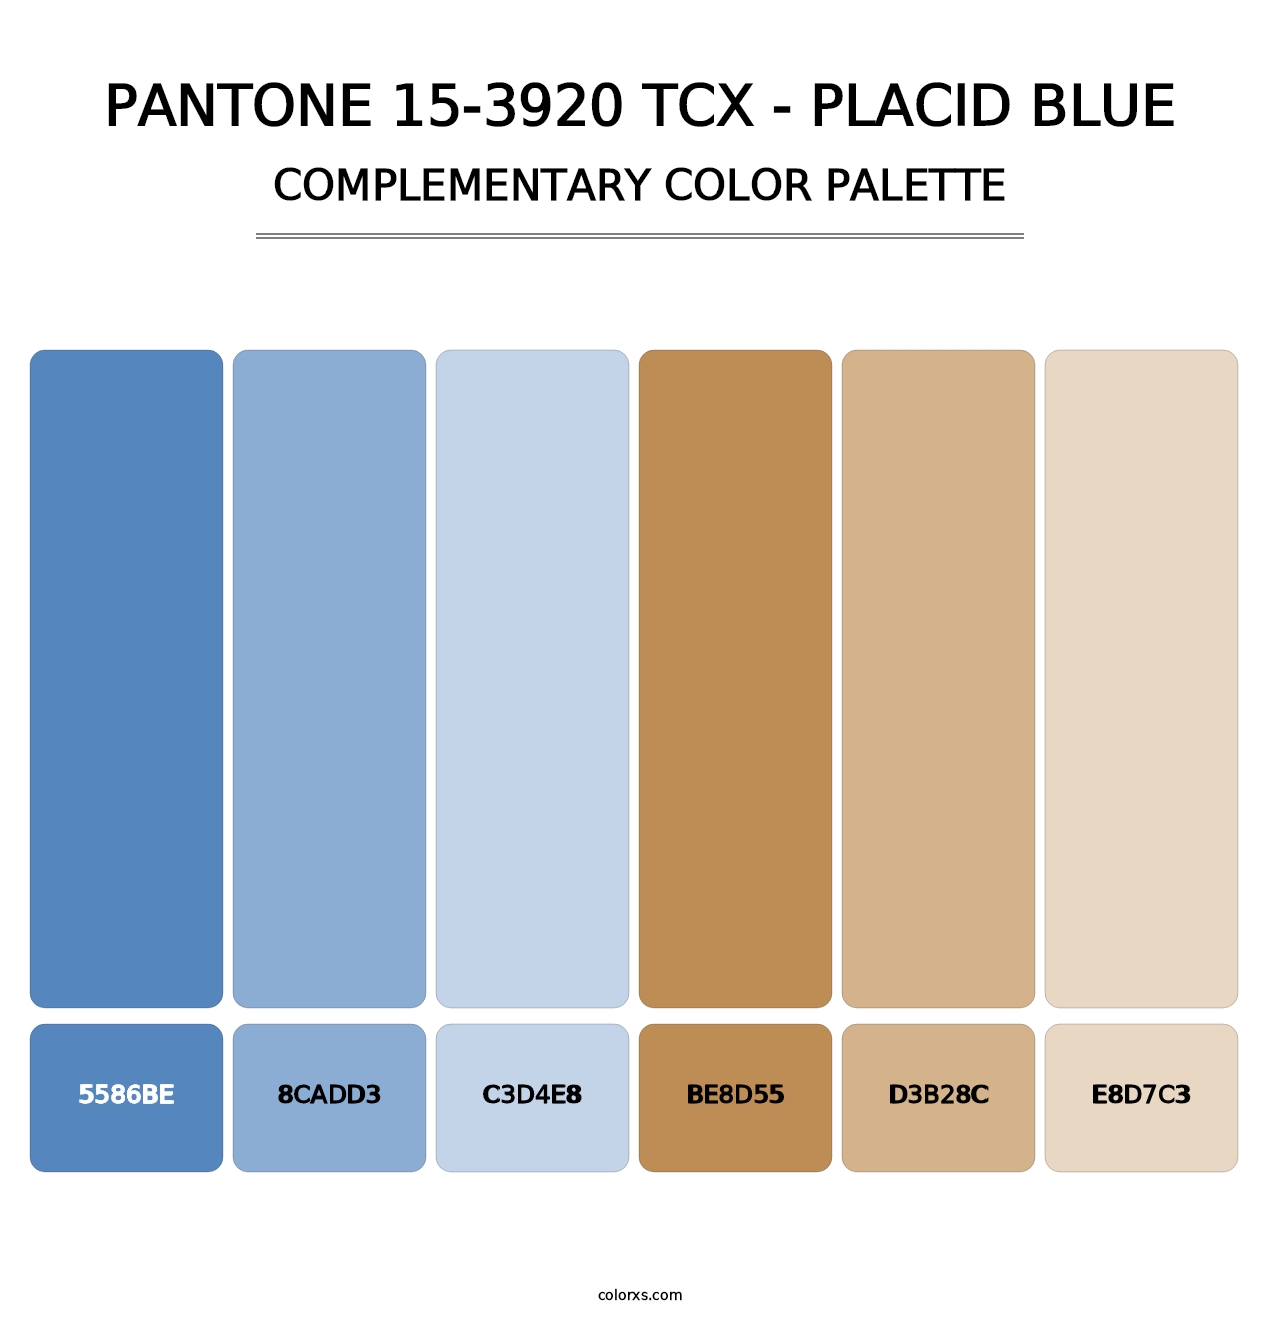 PANTONE 15-3920 TCX - Placid Blue - Complementary Color Palette